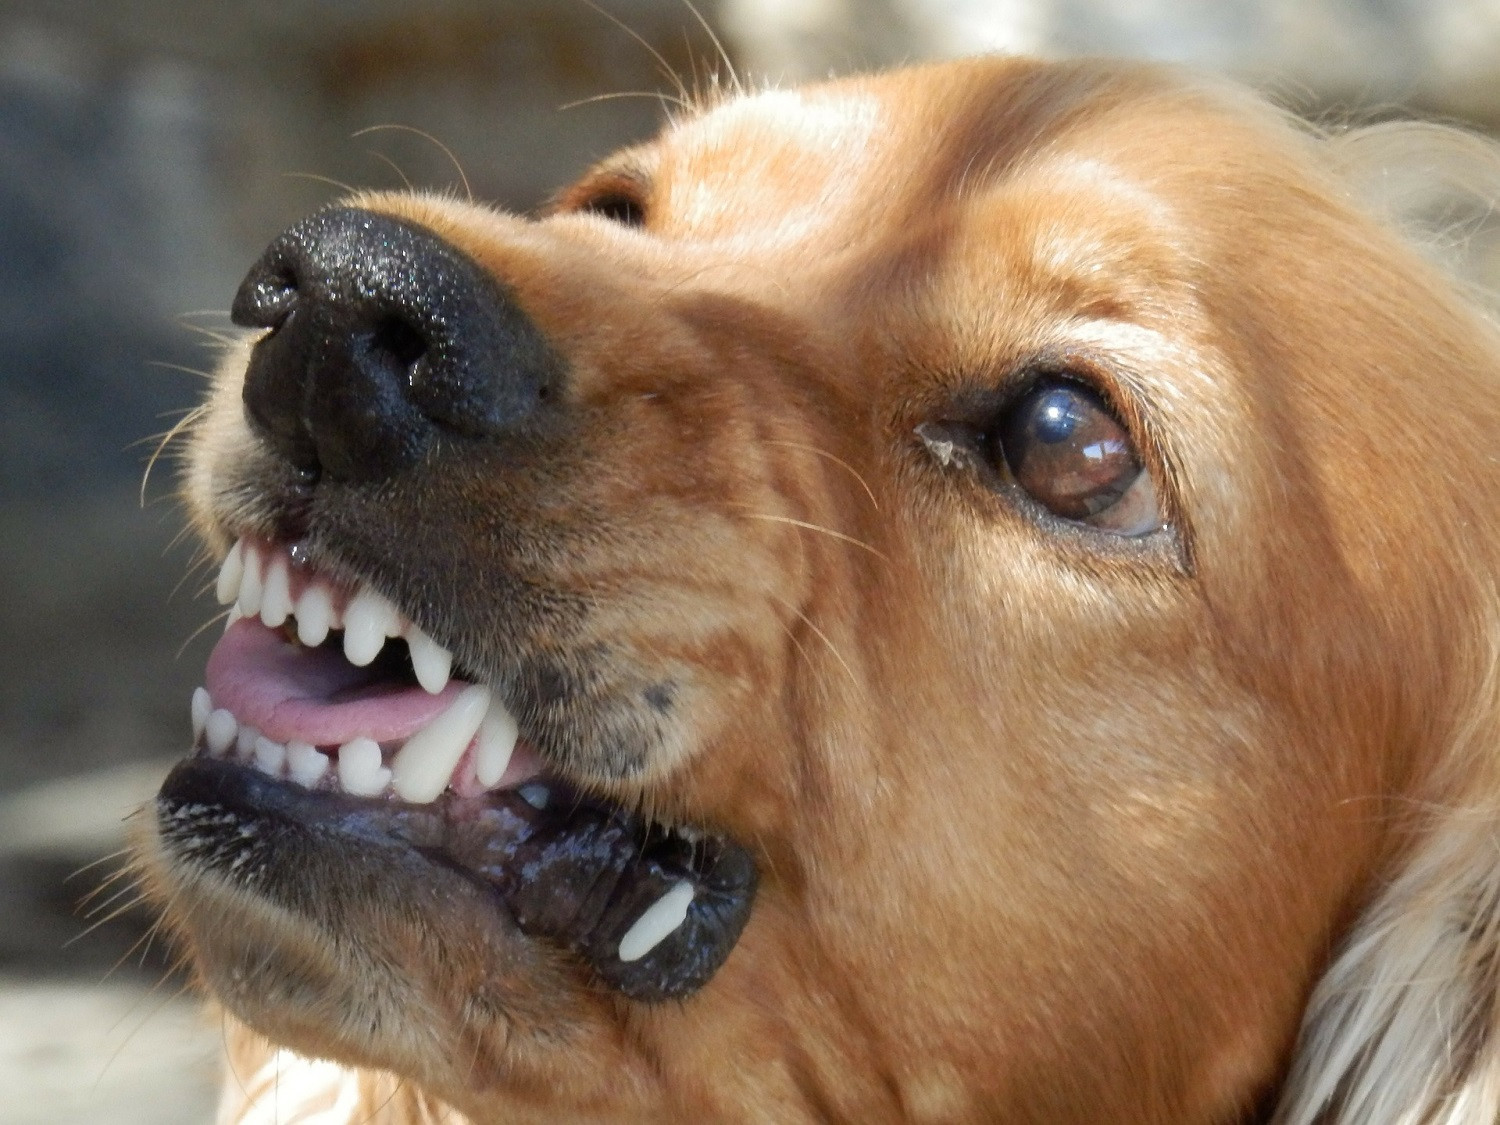 Σέρρες: Σκύλος επιτέθηκε σε 11χρονο - Πολίτες έβγαλαν το πόδι του από το στόμα του (pic)